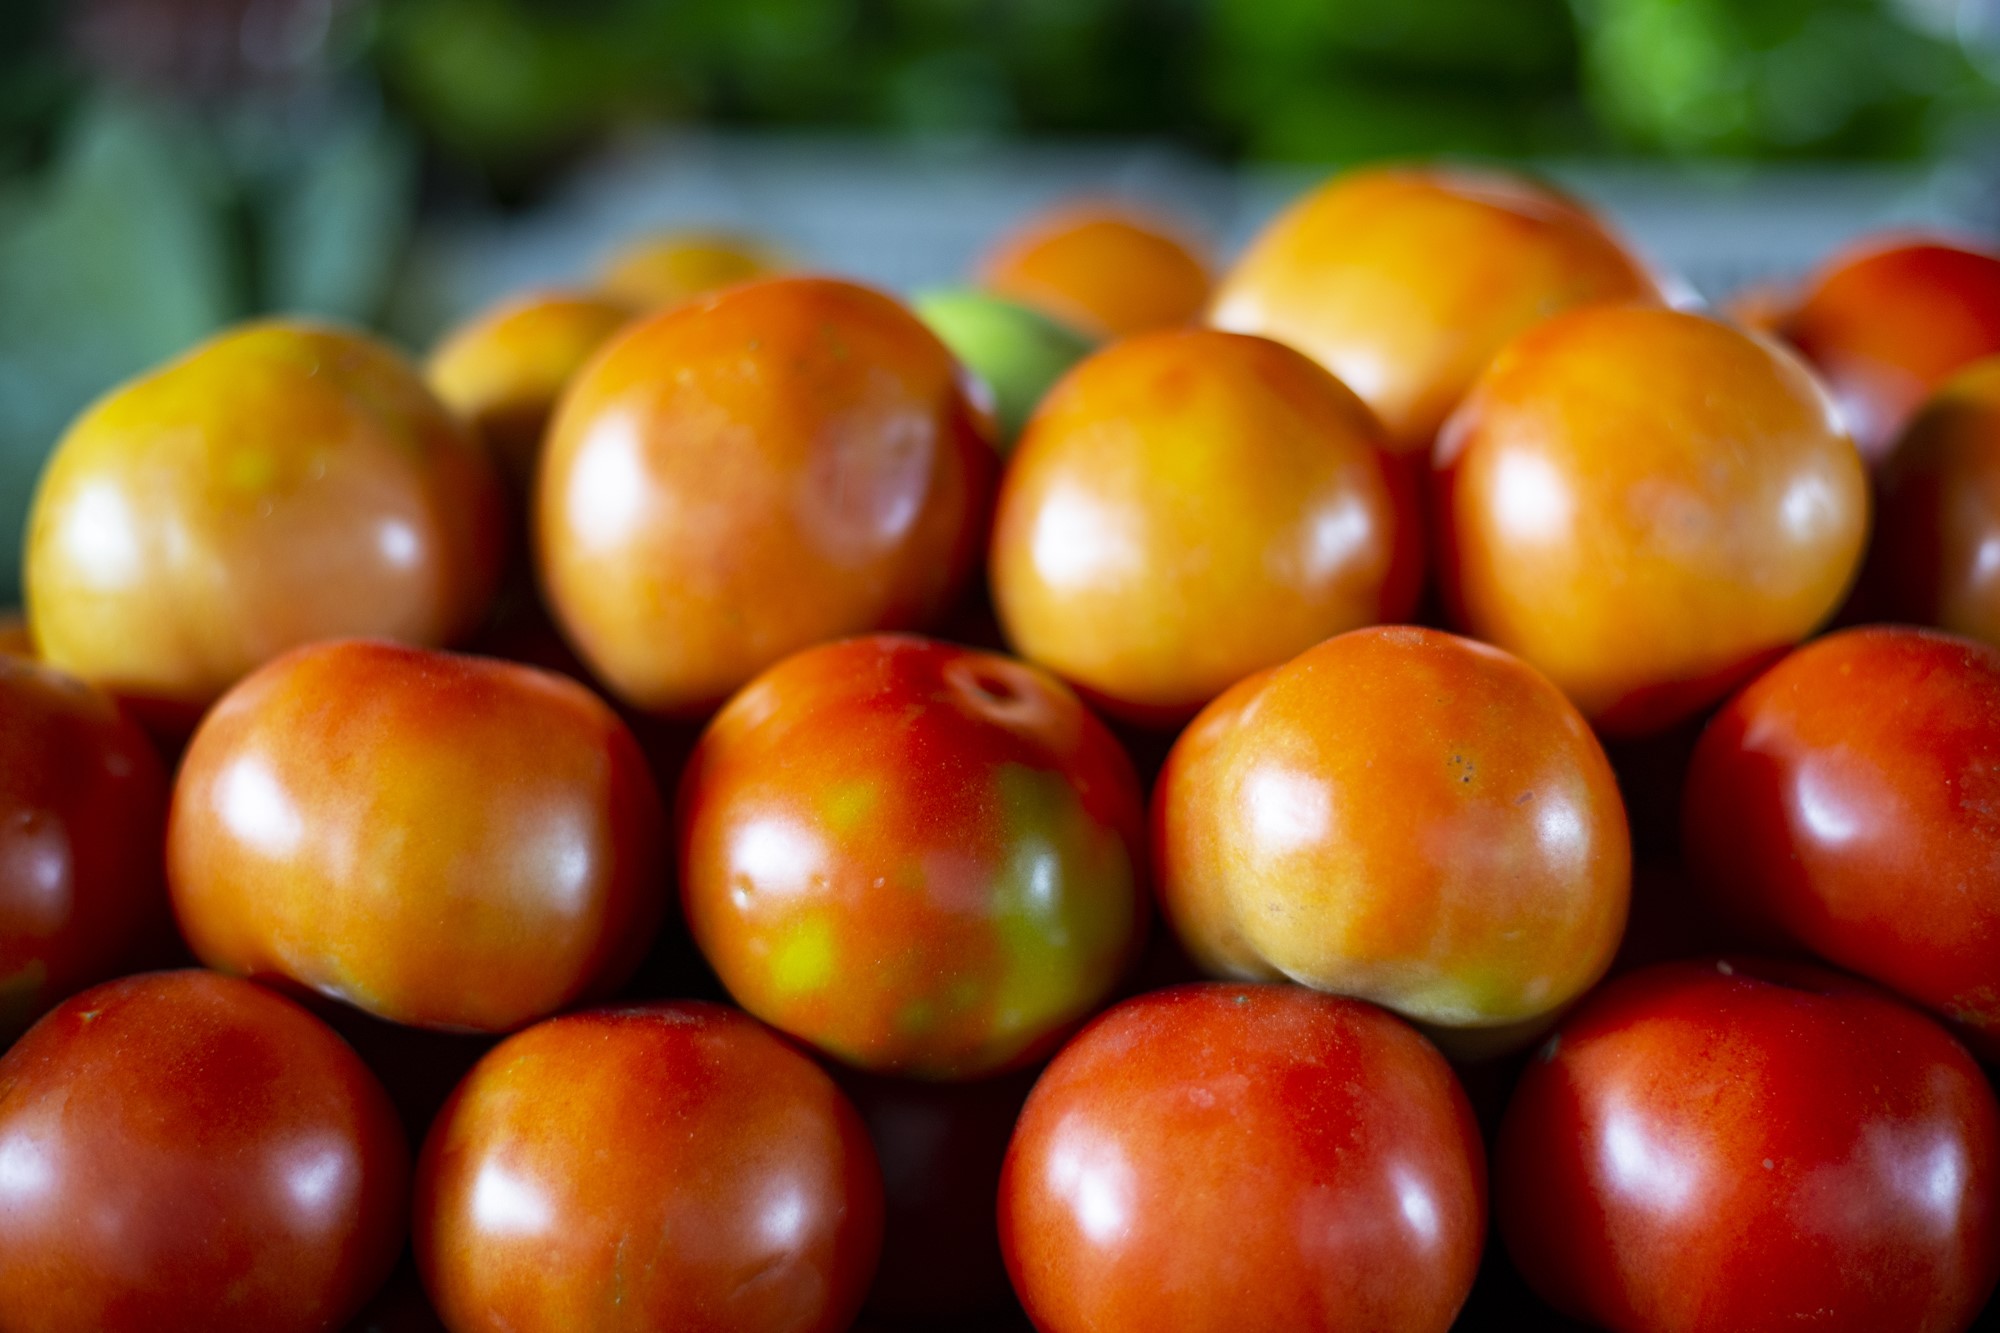 Com boas colheitas, preço do tomate está a R$ 3,20/kg na Ceasa em Maracanaú